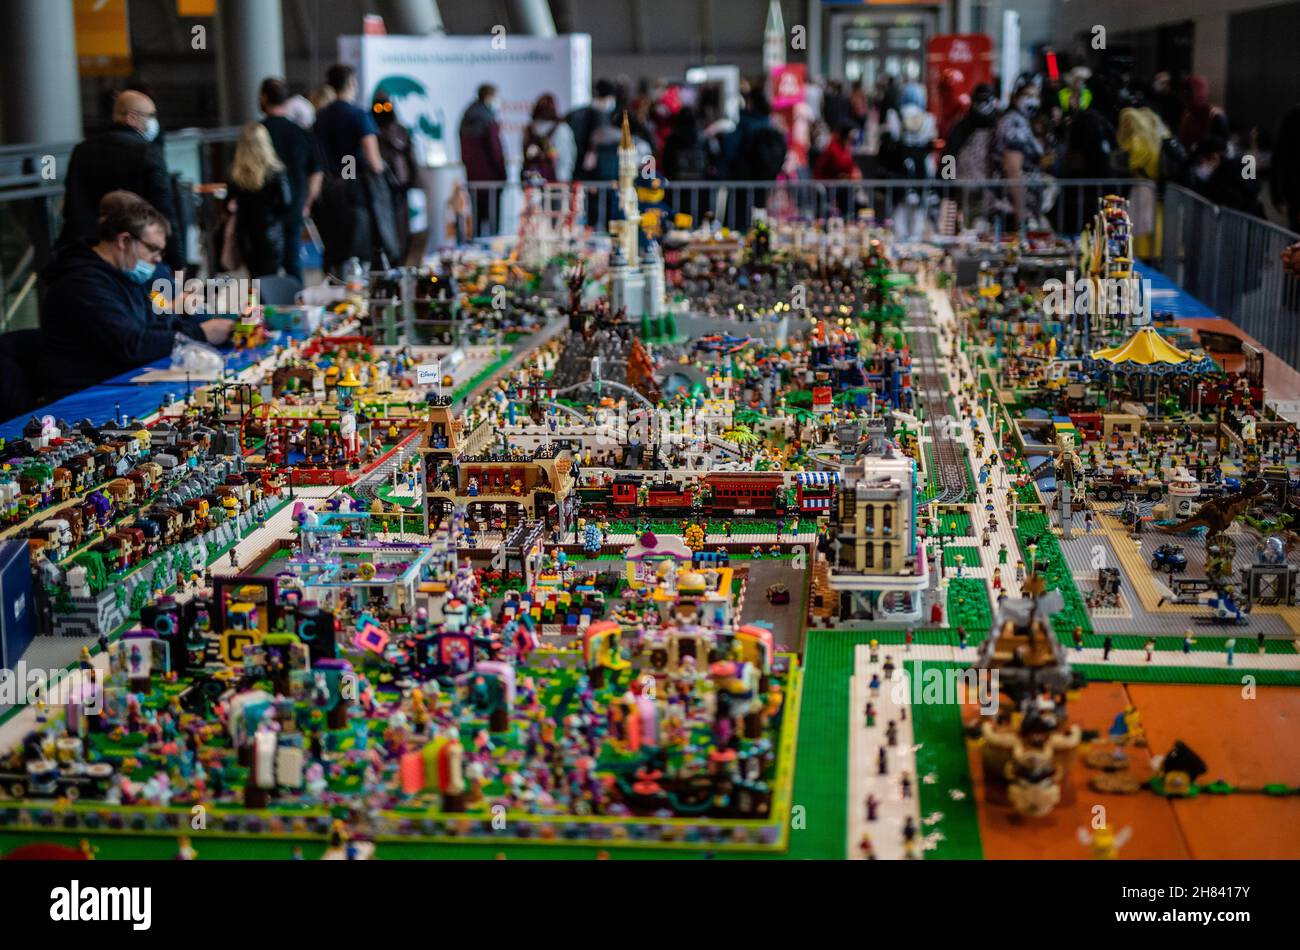 Stuttgart, Deutschland. 27th. November 2021. Eine große Lego-Landschaft ist  in einer Ausstellungshalle auf der Comic- und Fantasy-Messe 'Comic Con  Germany' zu sehen. Quelle: Christoph Schmidt/dpa/Alamy Live News  Stockfotografie - Alamy